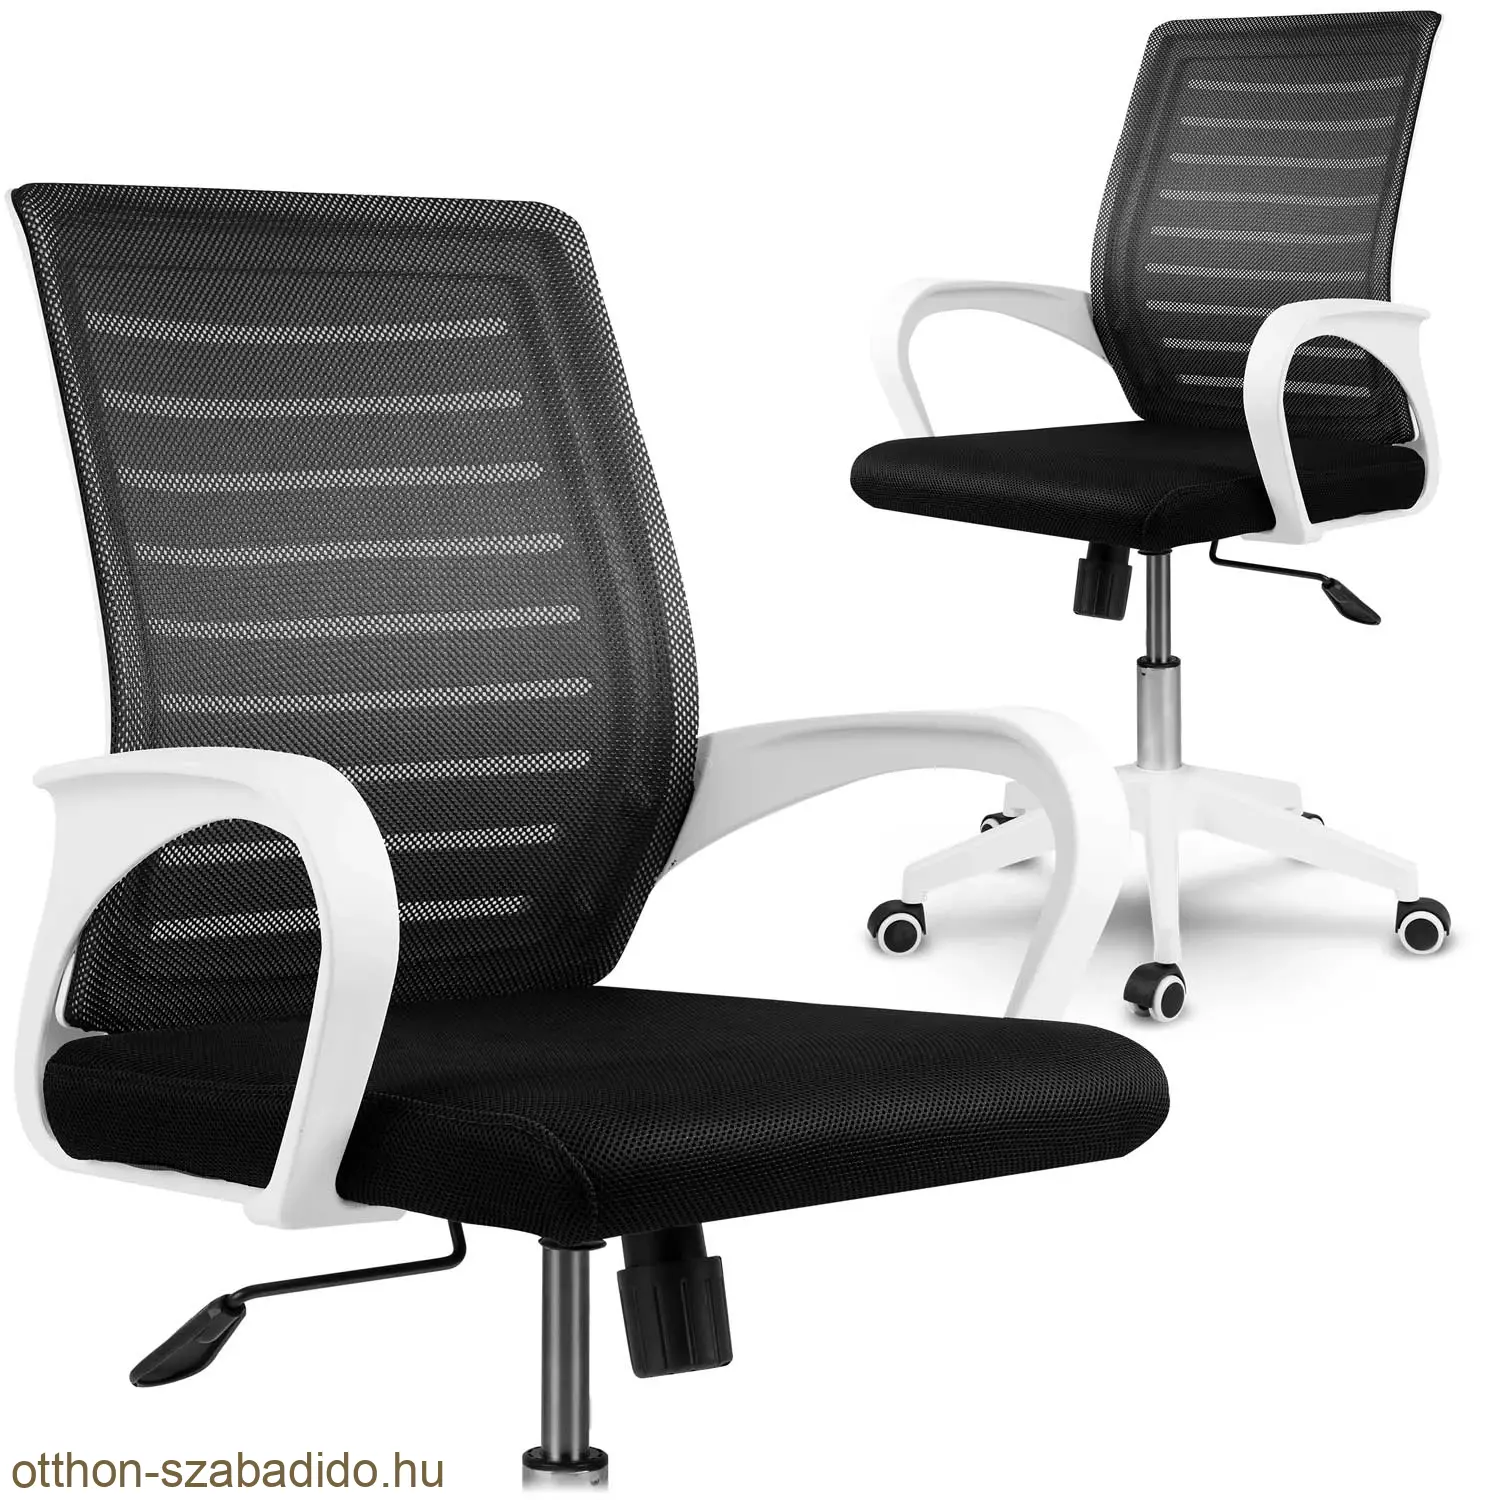 SOFOTEL mikrohálós irodai szék Batura fekete-fehér